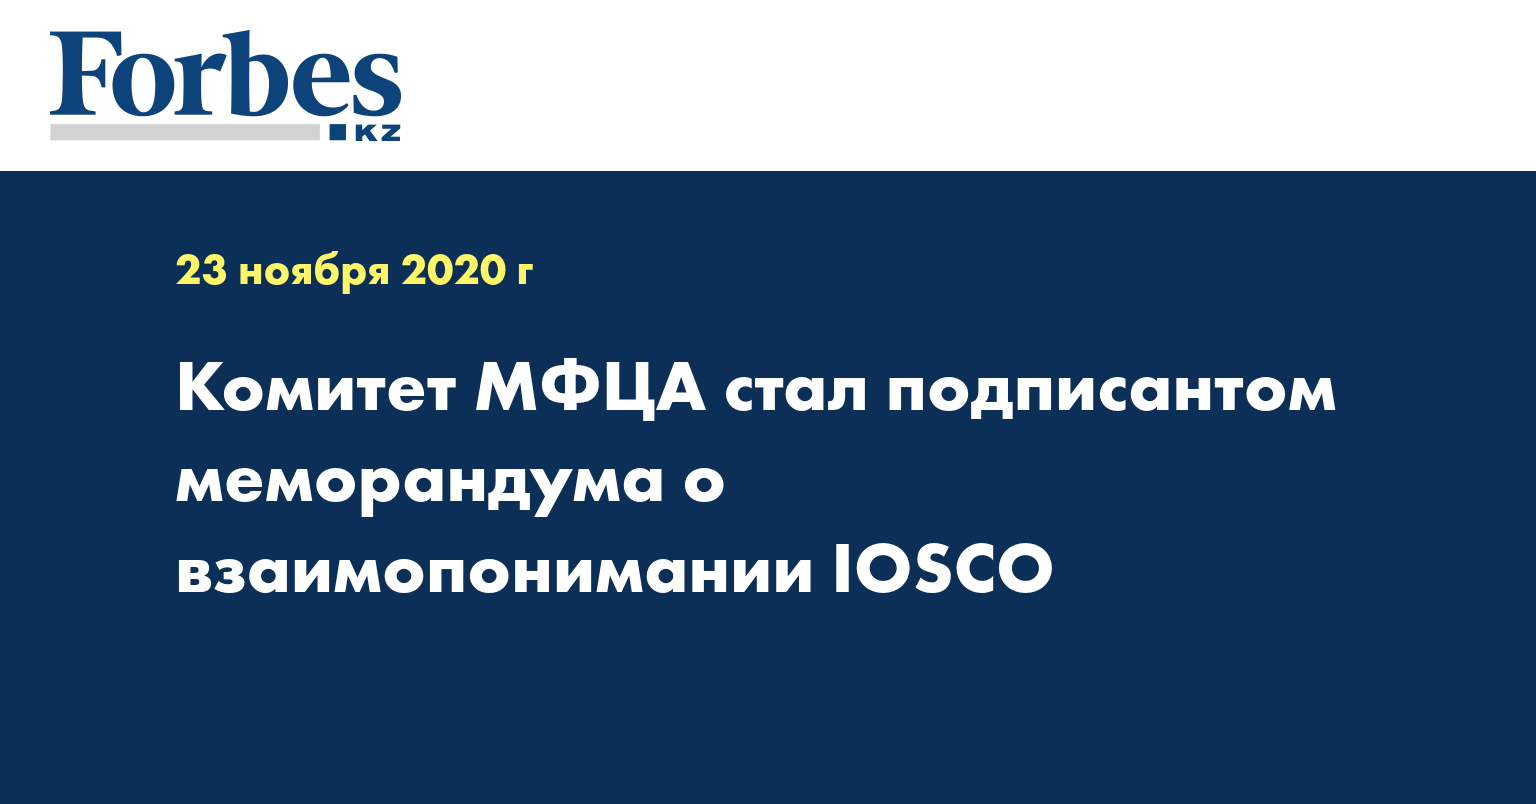 Комитет МФЦА стал подписантом меморандума о взаимопонимании IOSCO